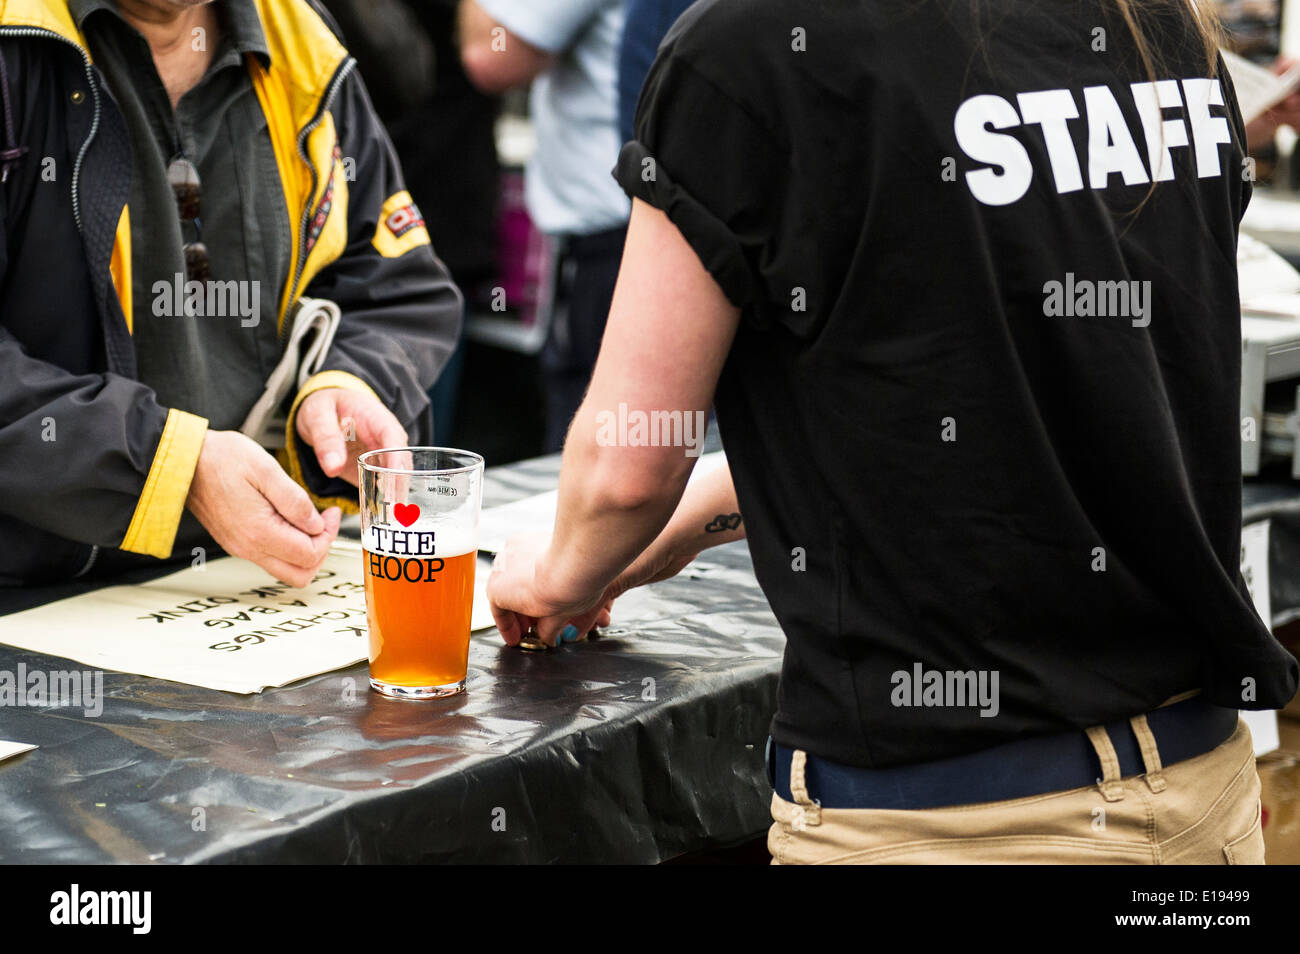 Mitglied der Barpersonal serviert einen halbes Pint real Ale. Stockfoto